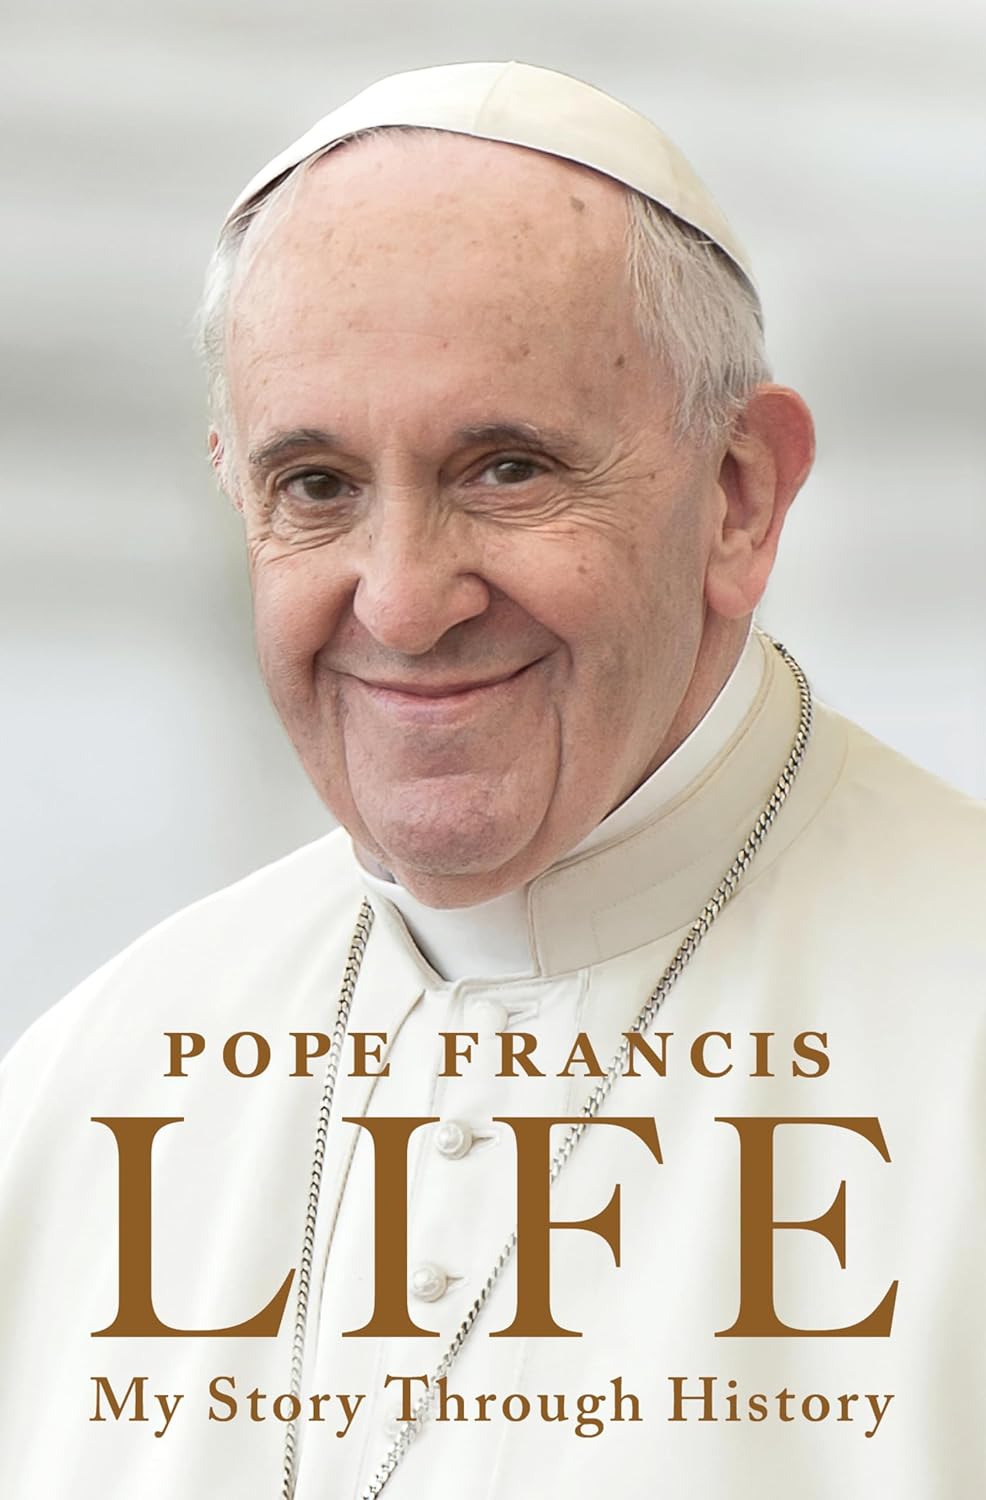 Cover van de autobiografie van paus Franciscus